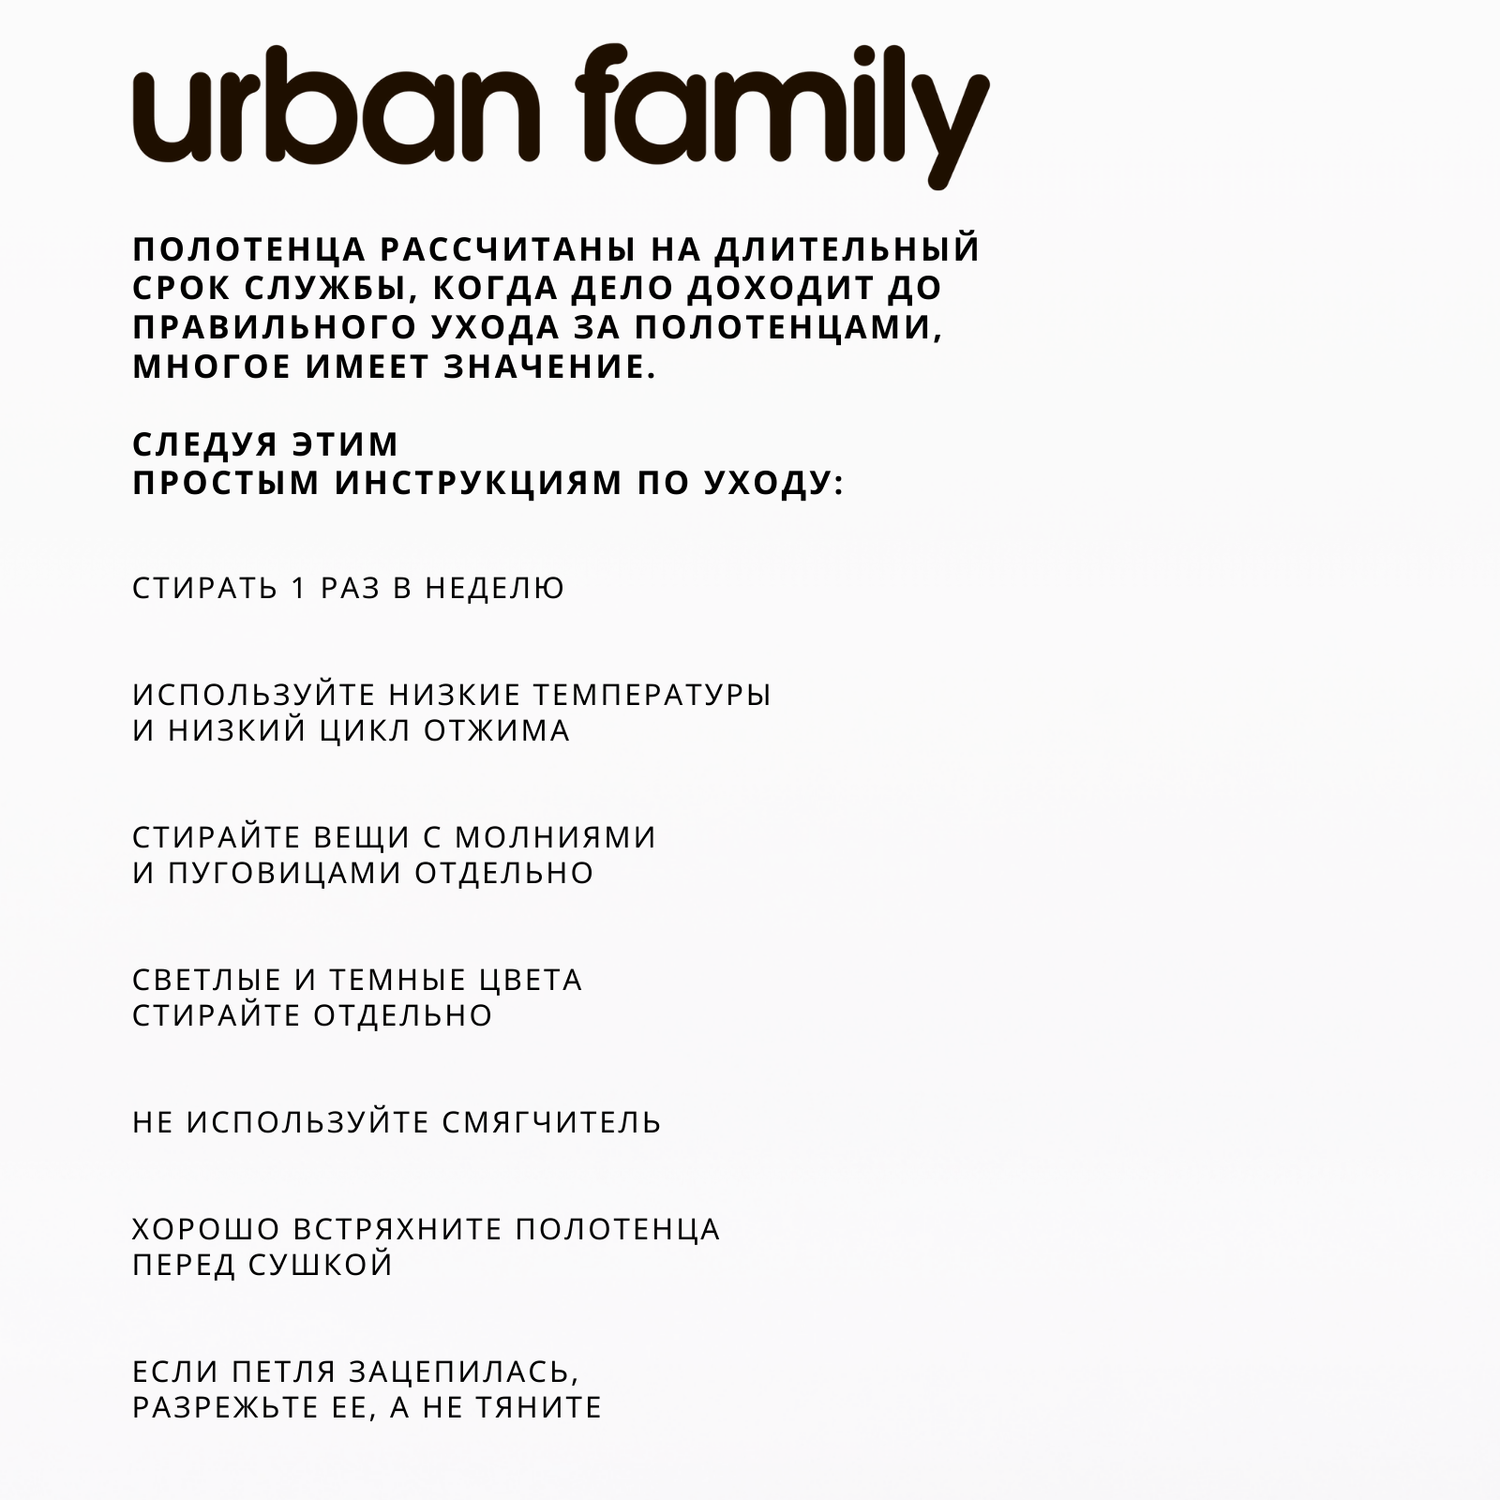 Набор махровых полотенец Urban Family Бежевый с коричневой полоской - фото 8